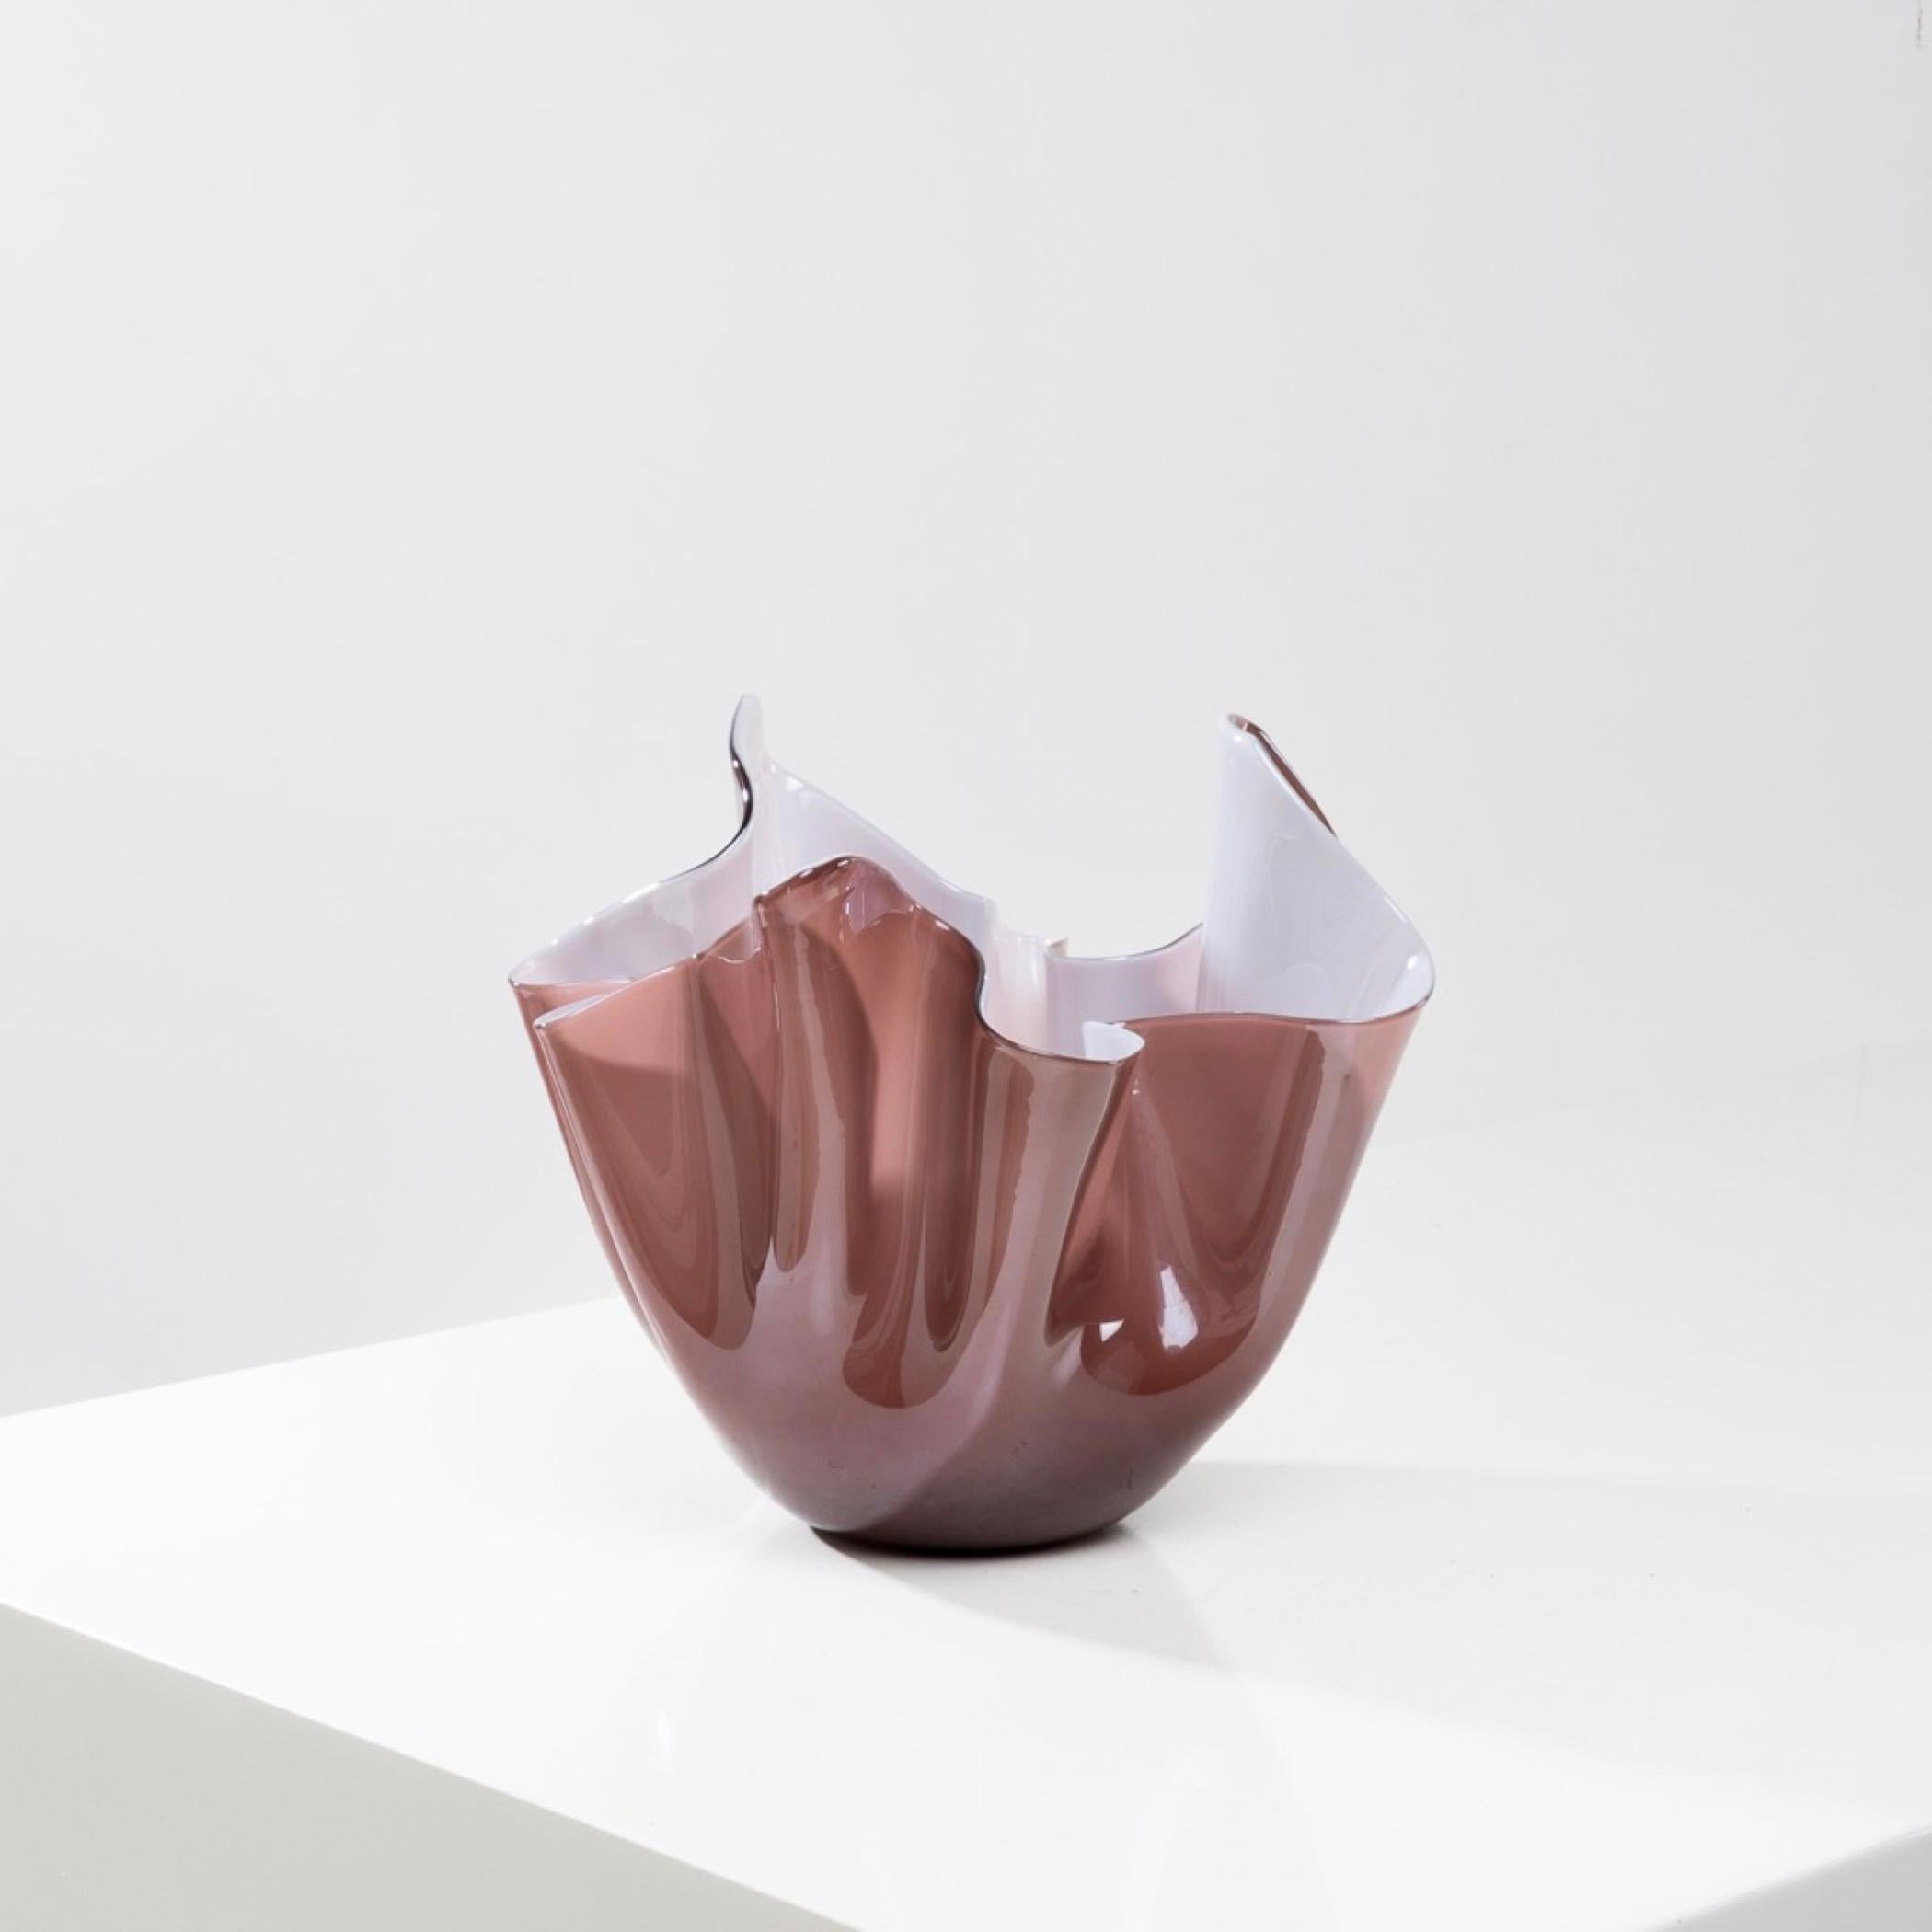 Fazzoletto by Fulvio Bianconi – Handkerchief vase – Venini Murano For Sale 1